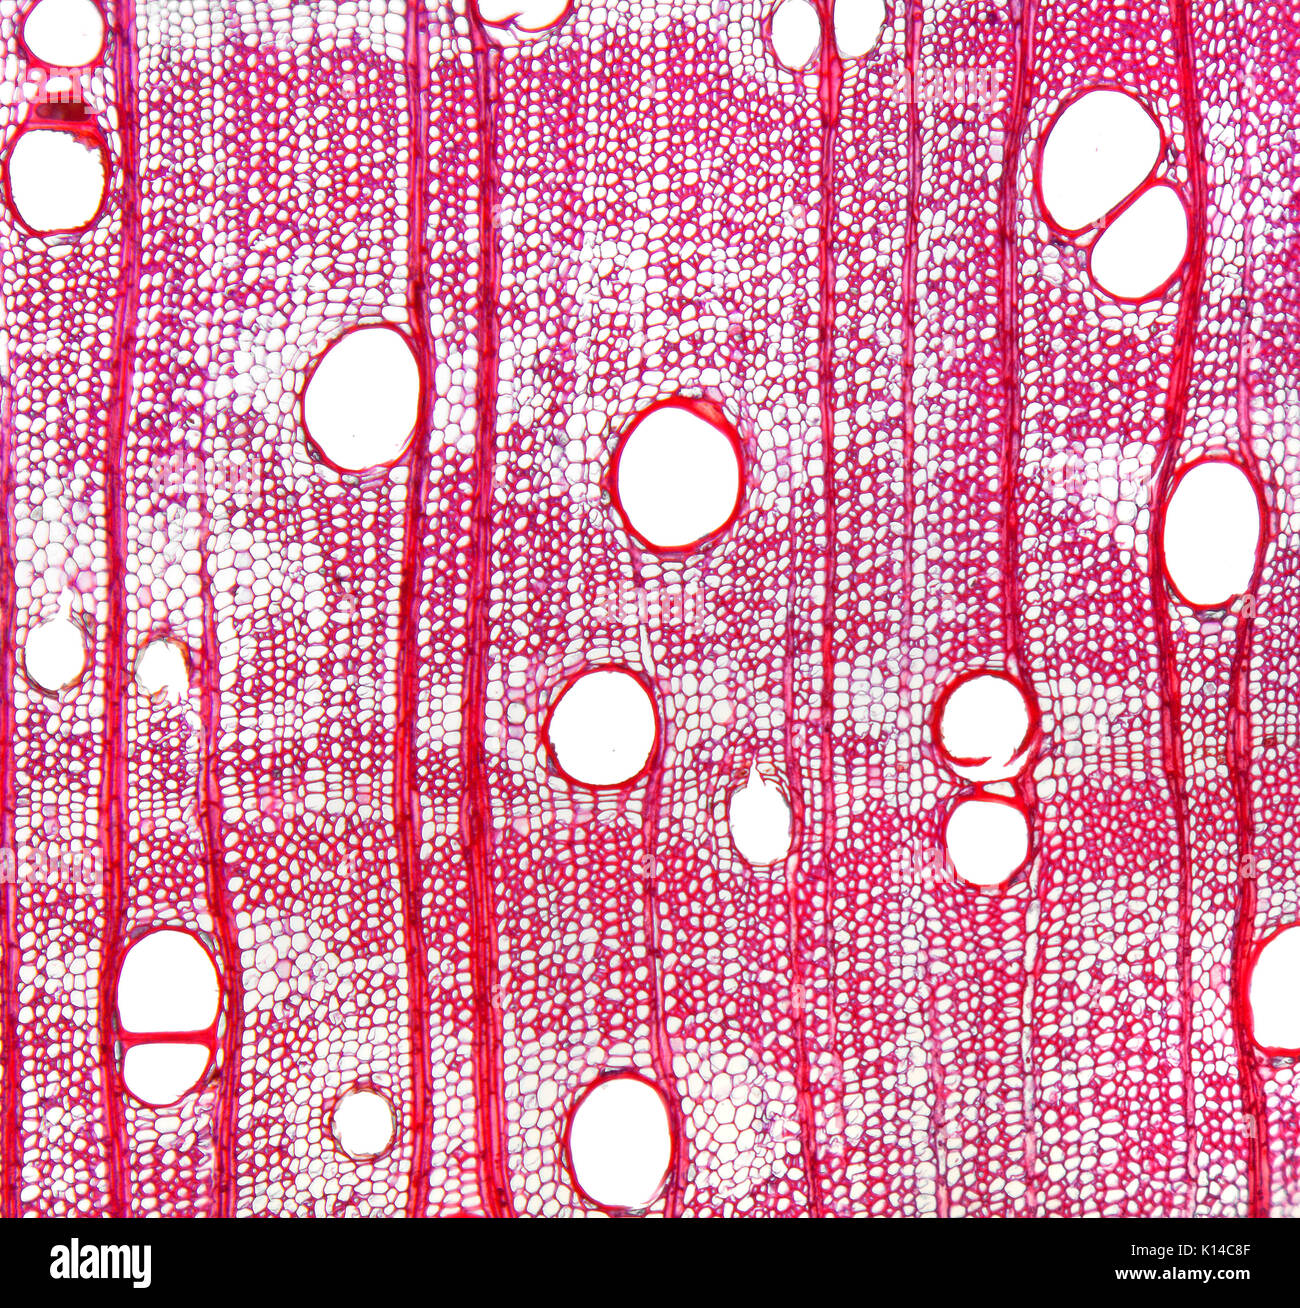 Campo chiaro fotomicrografia, Agba Tola, Gosweillerodendron balsamiferum Foto Stock